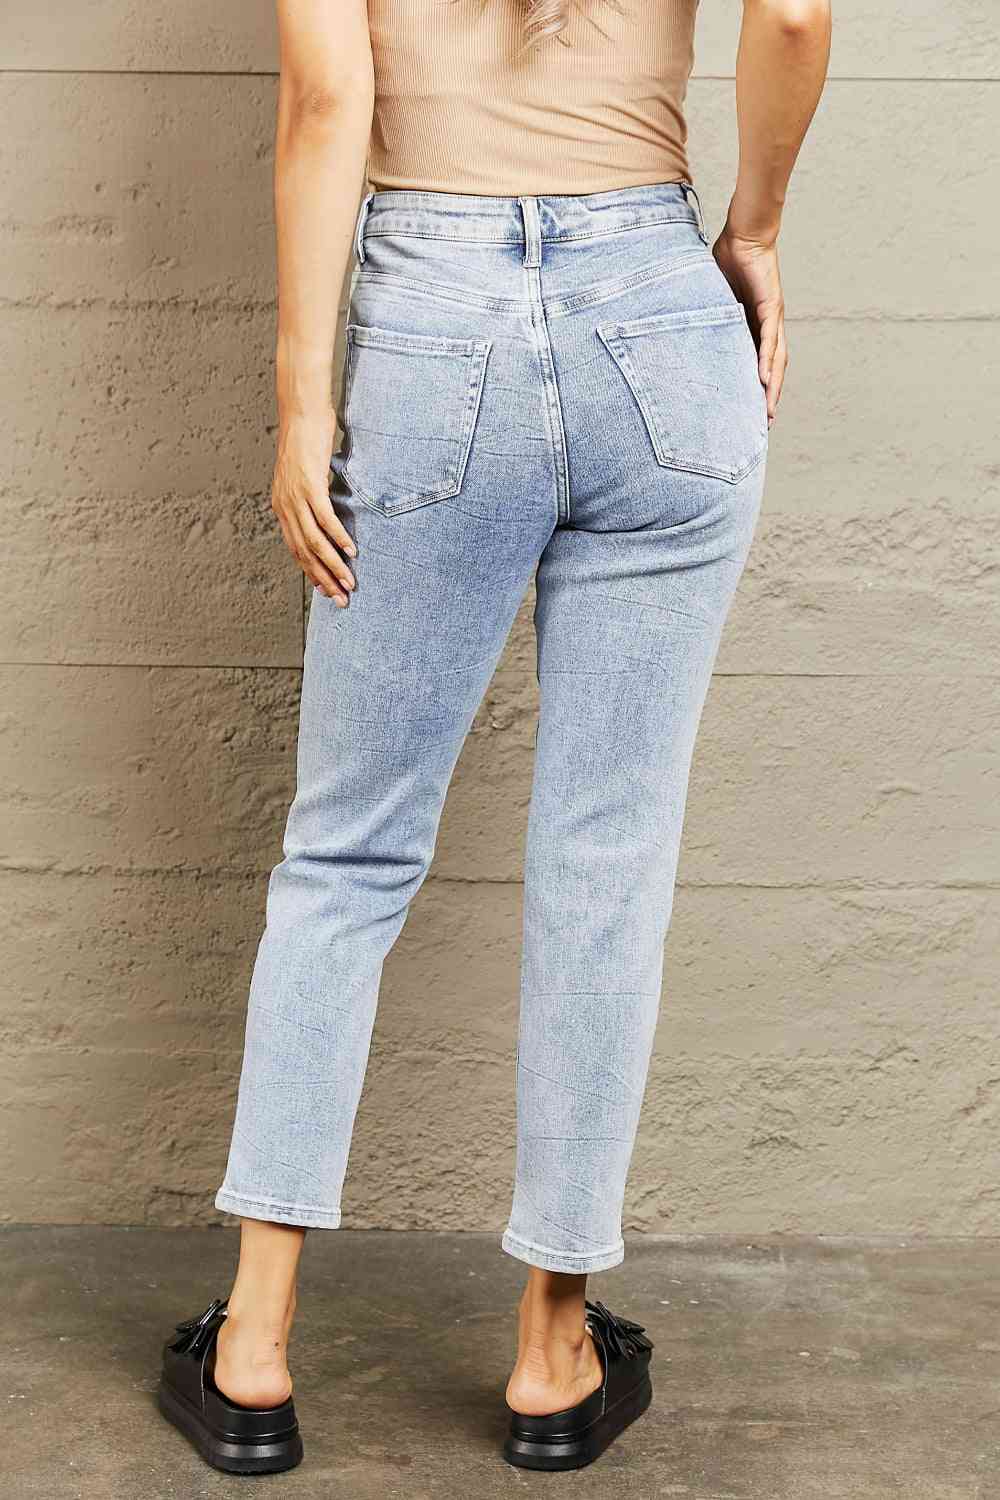 BAYEAS High Waisted Skinny Jeans - Pahabu